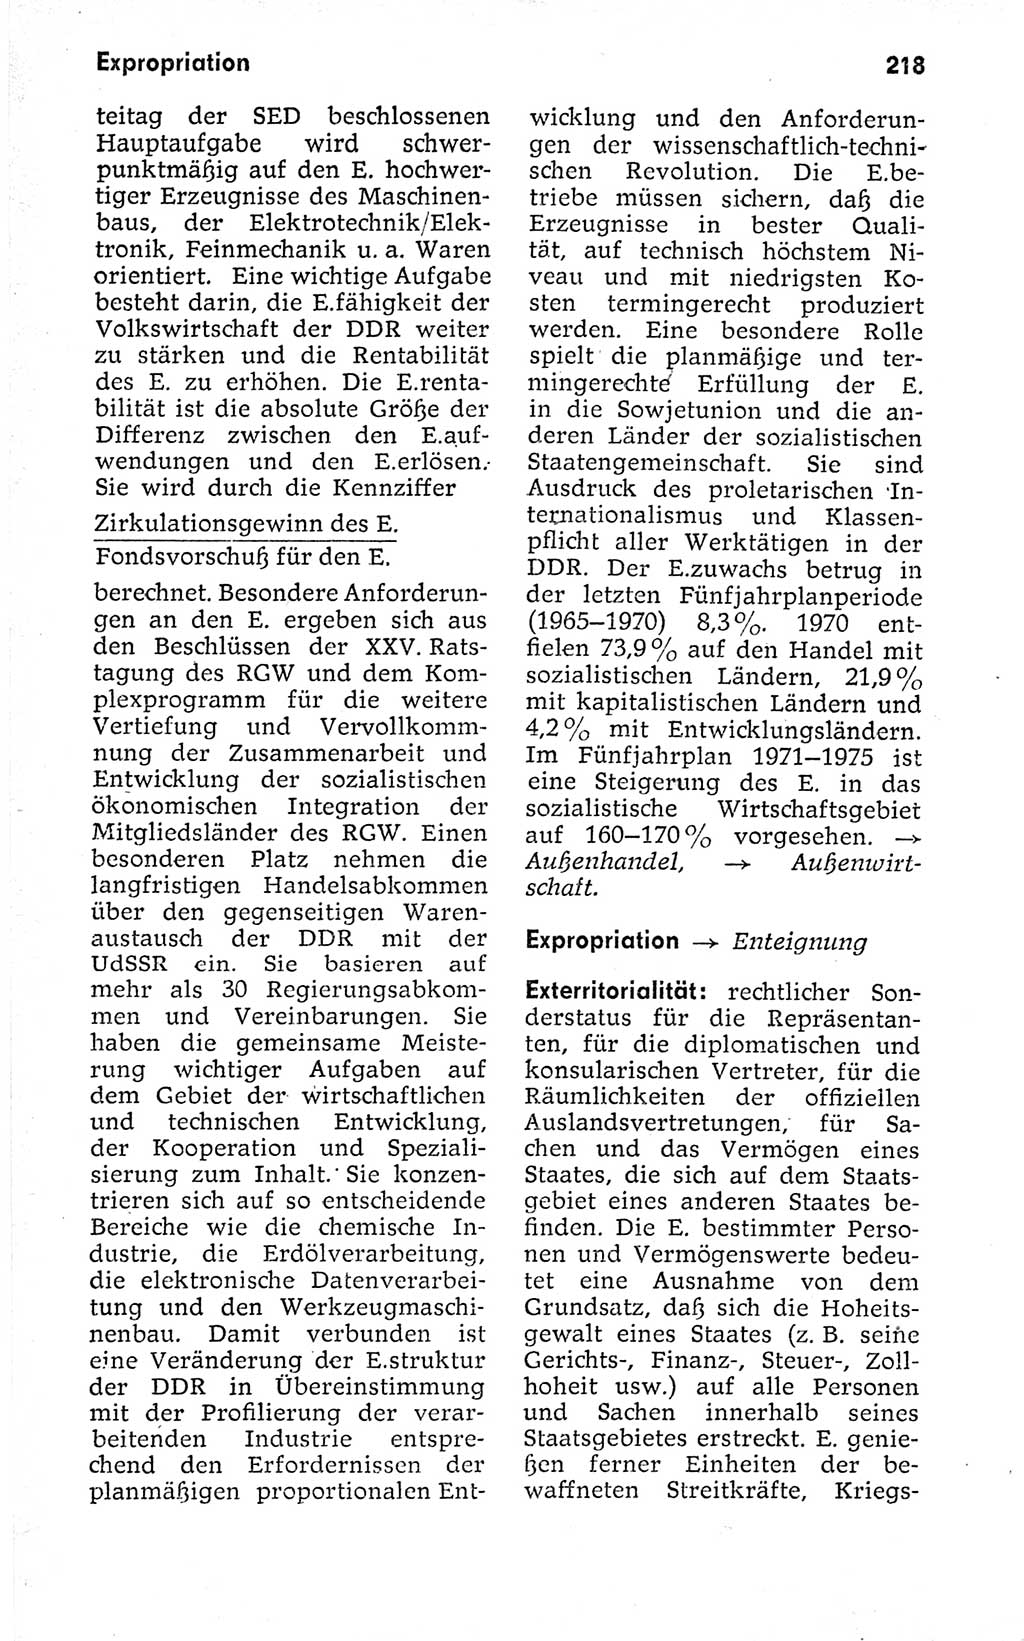 Kleines politisches Wörterbuch [Deutsche Demokratische Republik (DDR)] 1973, Seite 218 (Kl. pol. Wb. DDR 1973, S. 218)